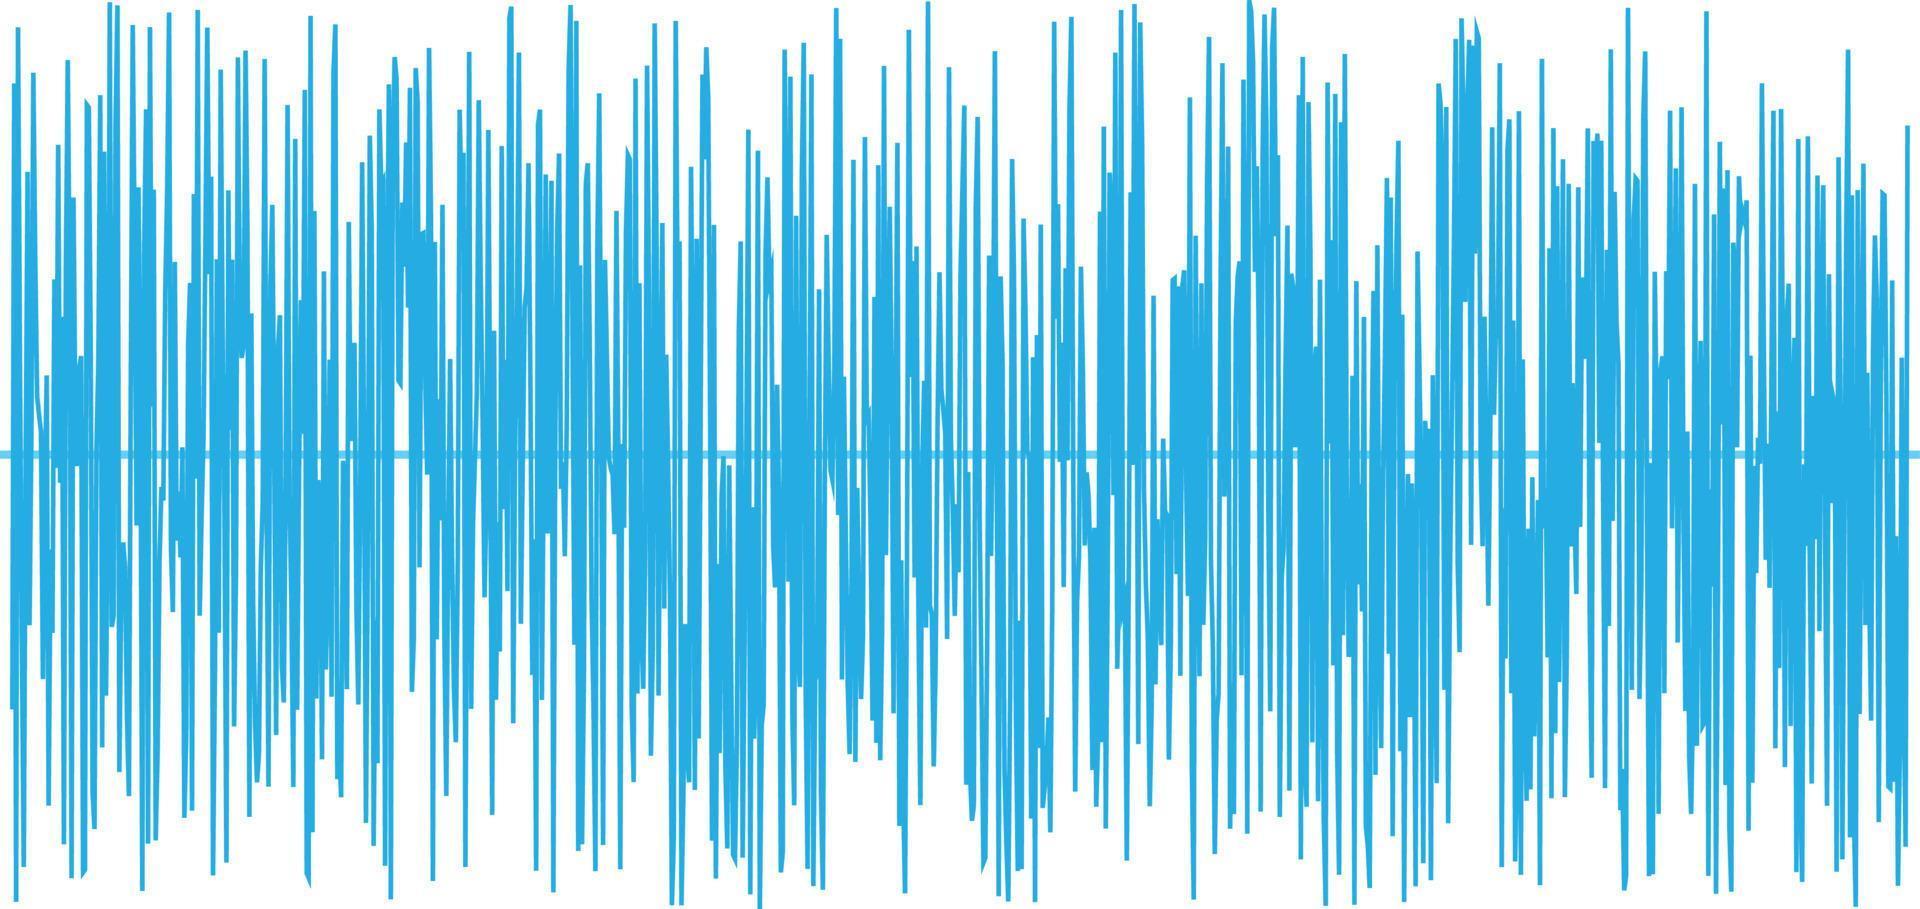 onda sonora blu su sfondo bianco. segno dell'onda sonora. simbolo dell'onda. vettore